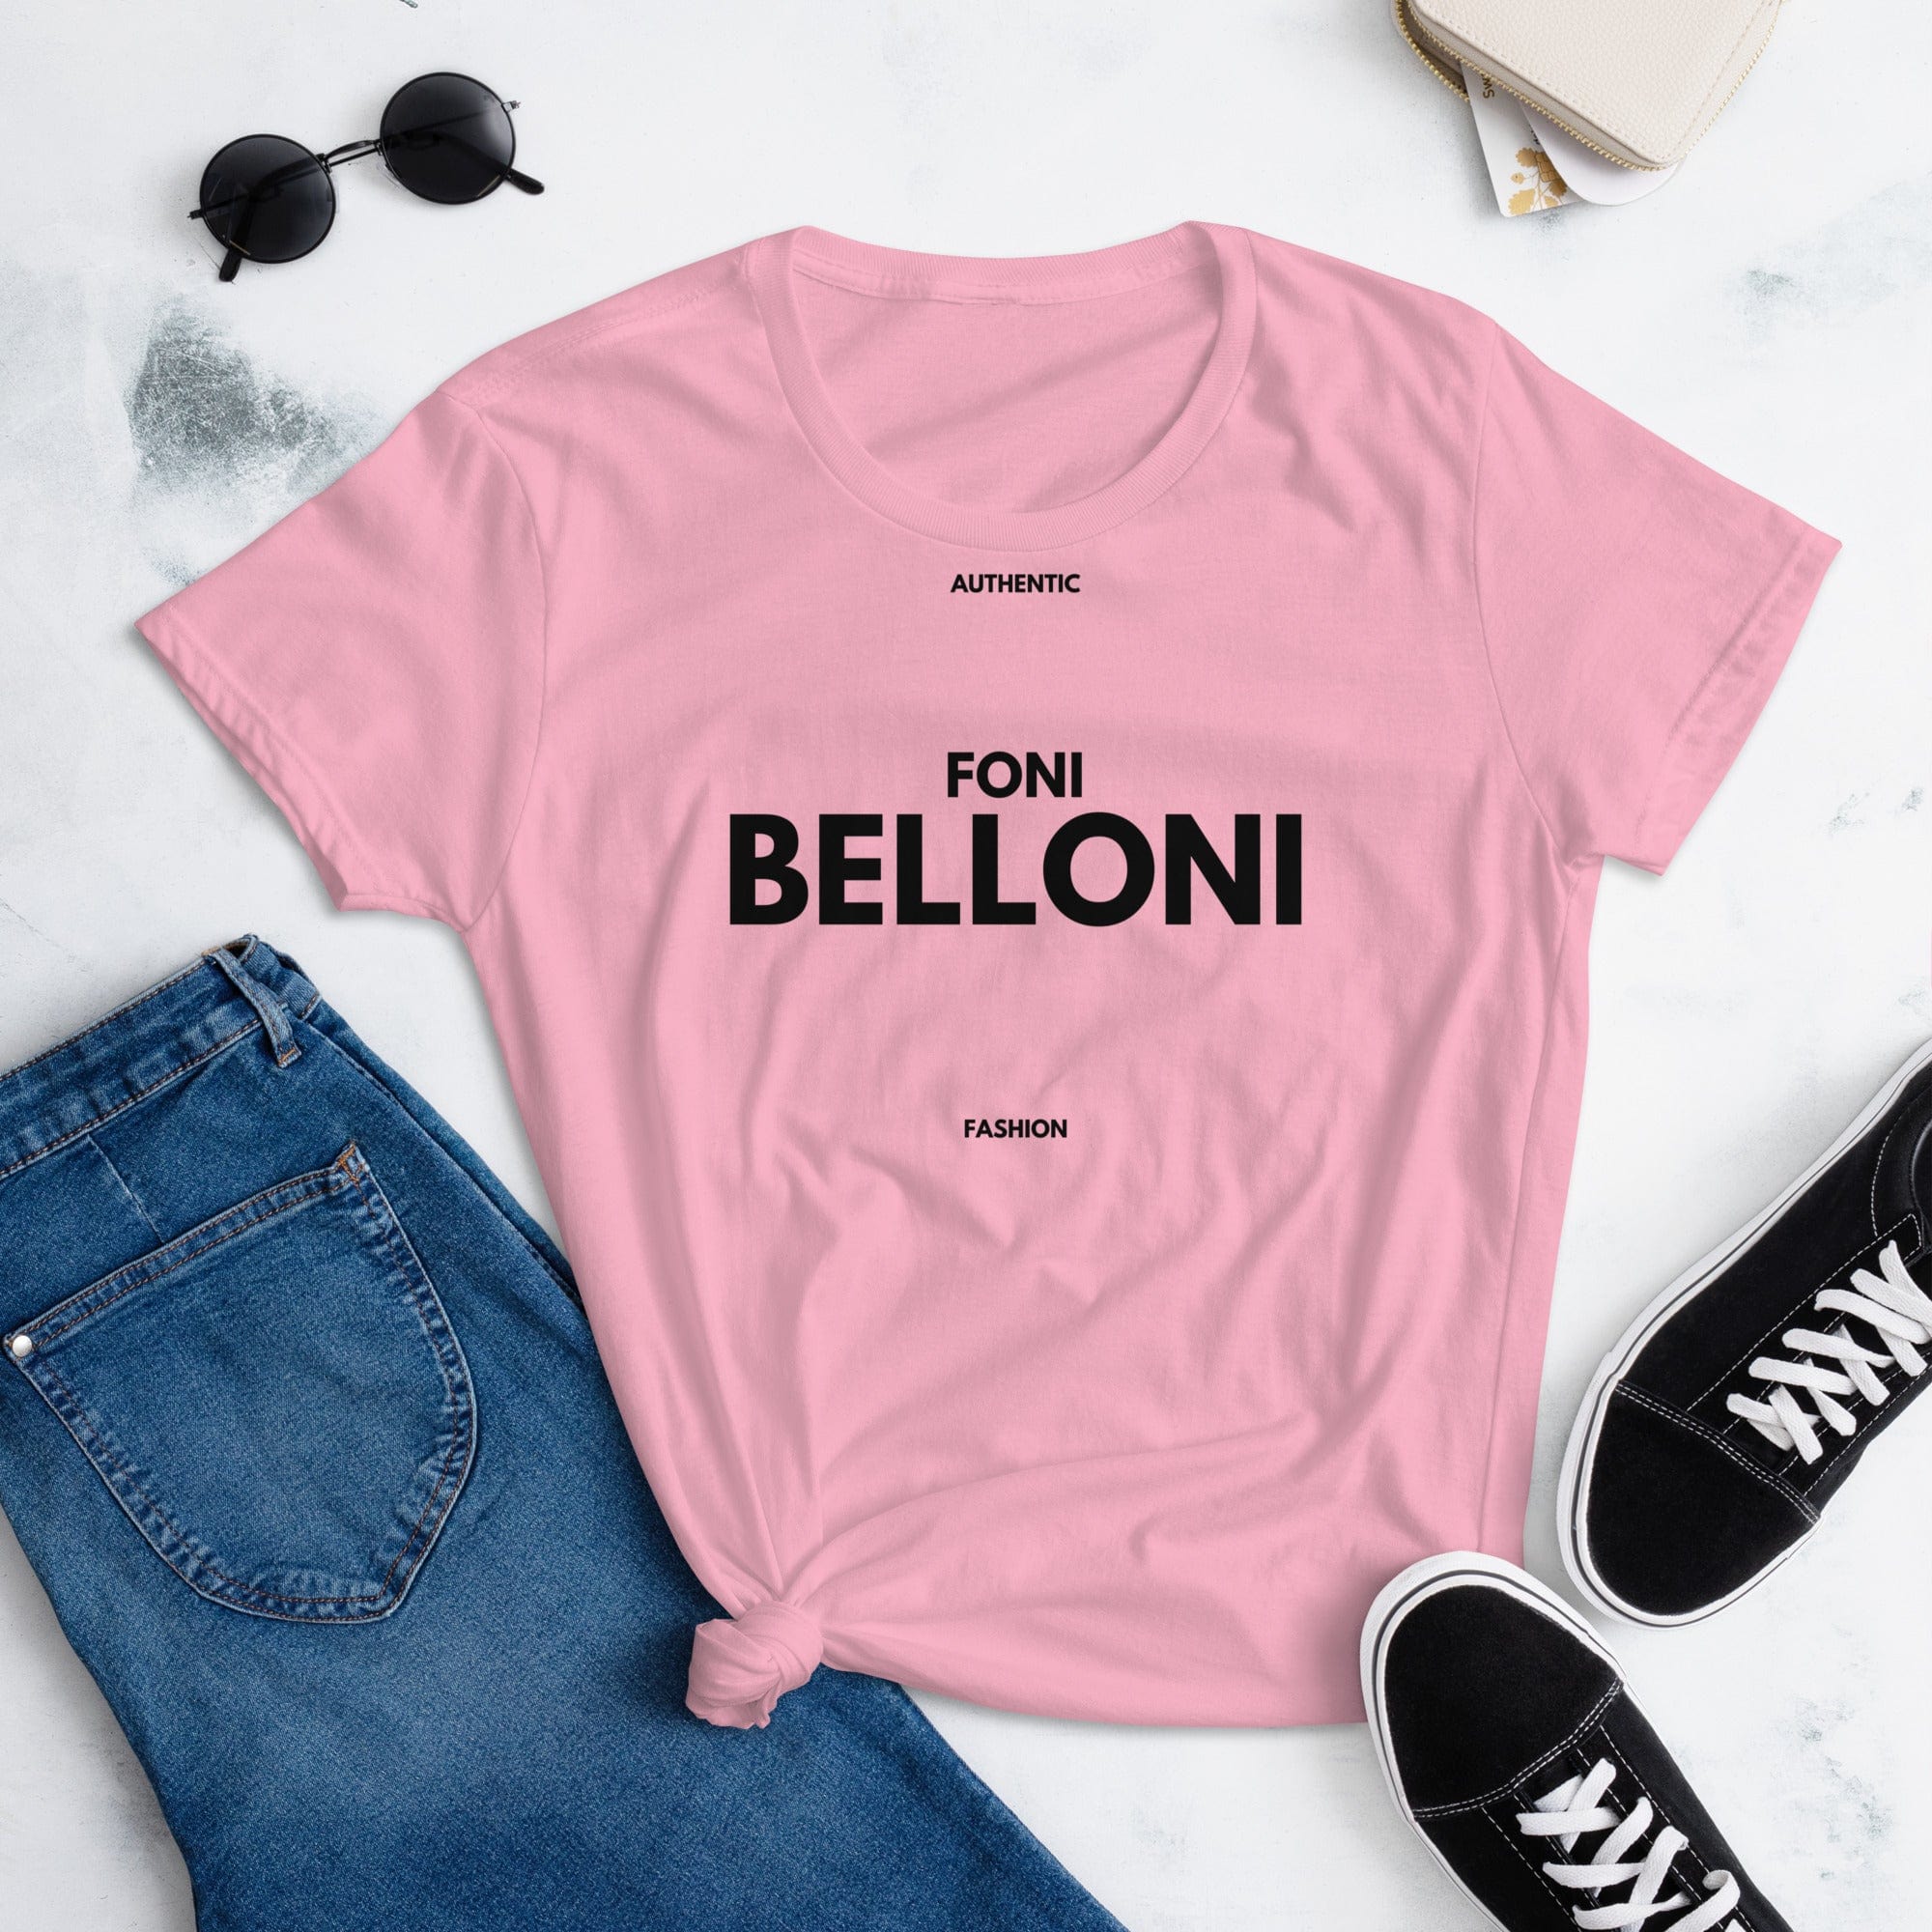 Foni Belloni Authentic Fashion Women's T-shirt Charity Pink / S Women's Shirts Jolly & Goode